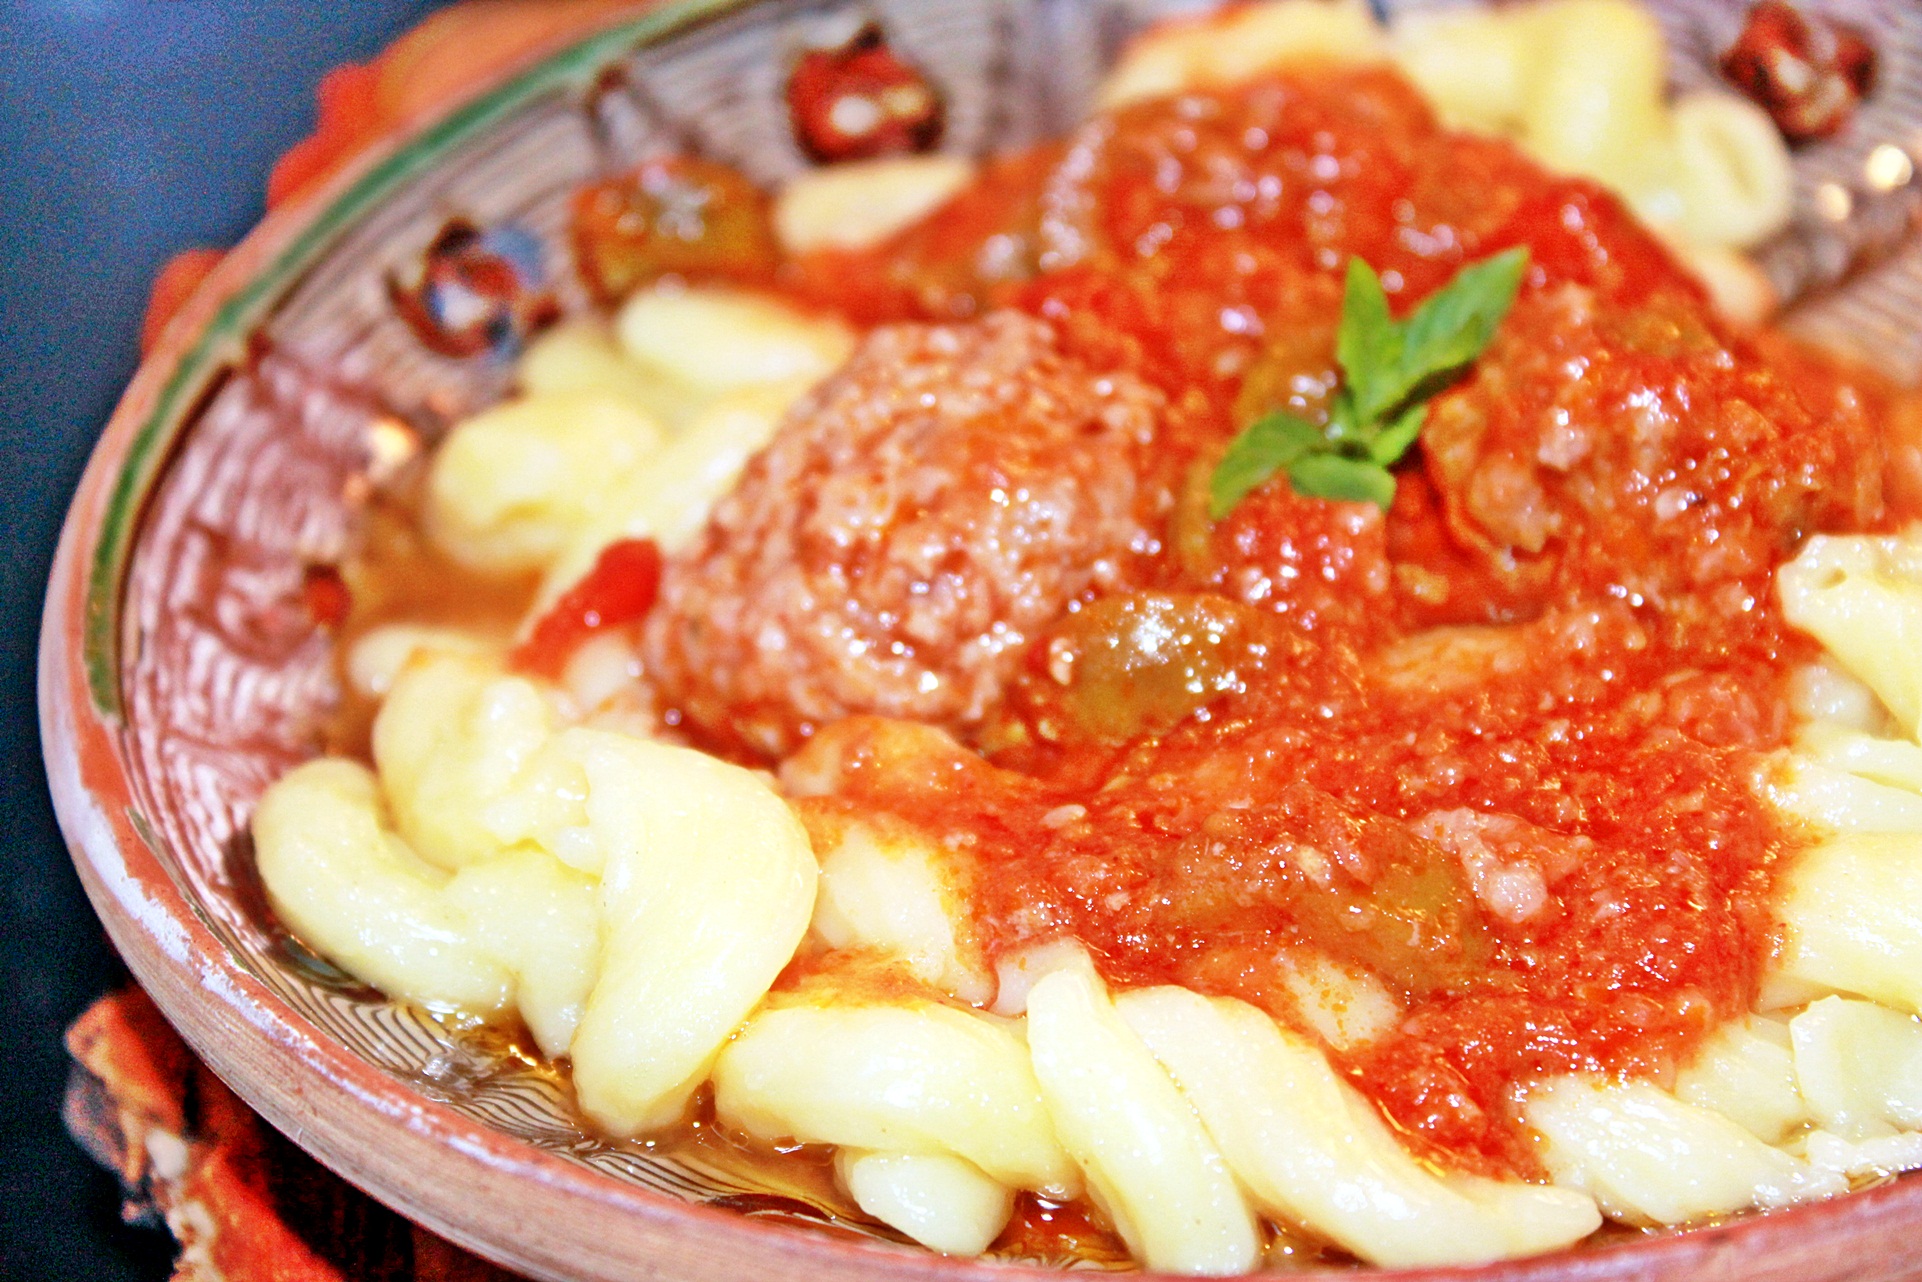 Perișoare în sos tomat cu capere și măsline, acompaniate de Serpentine de la Băneasa